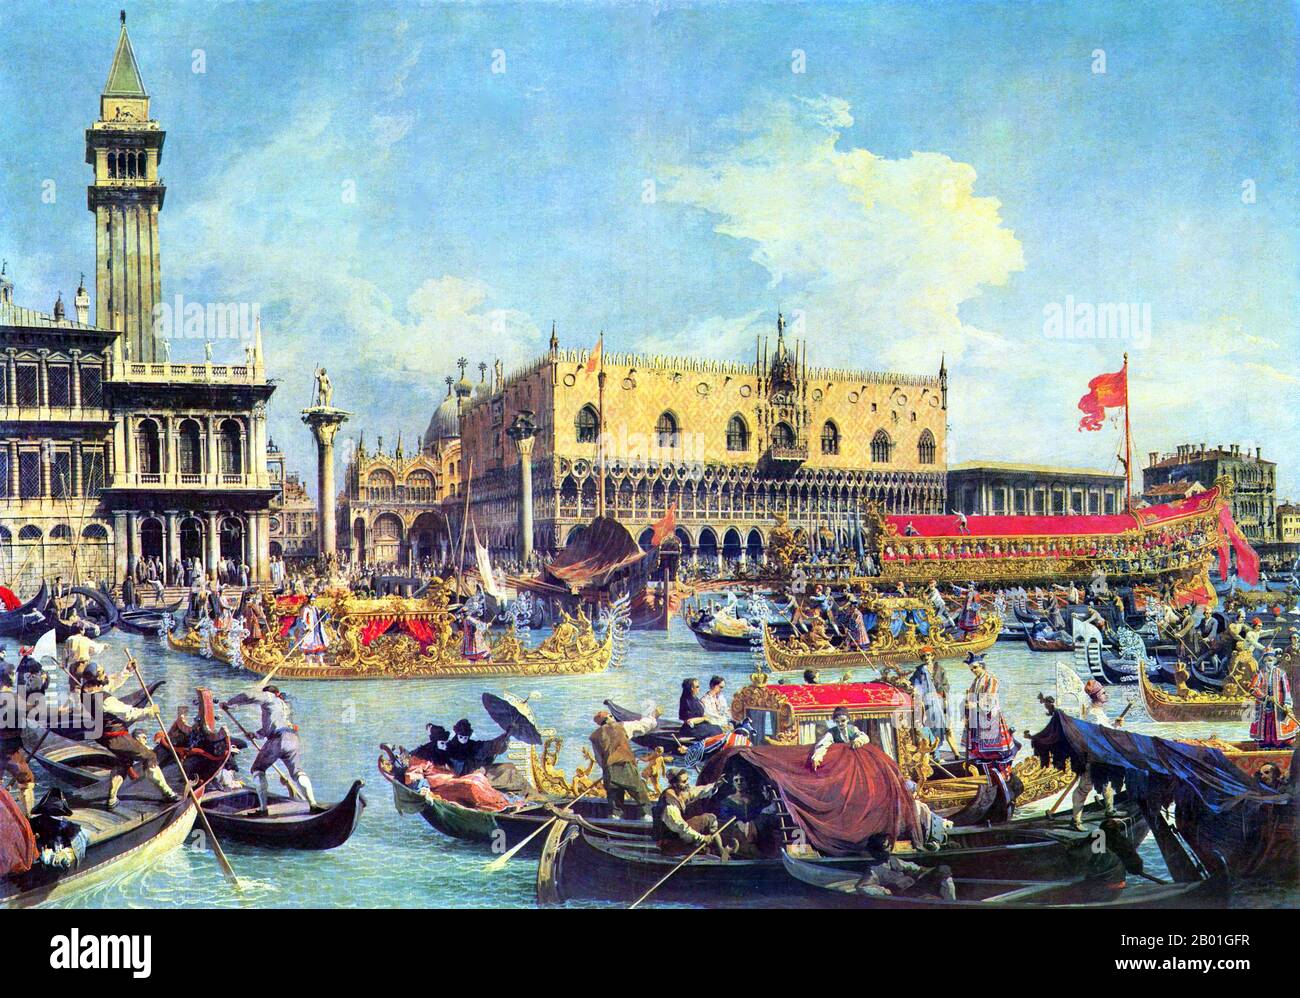 Italien/Venedig: "Der Bucintoro kehrt am Tag des Aufstiegs zum Molo zurück". Ölgemälde von Canaletto (18. Oktober 1697 bis 10. April 1768), 1732. Jahrhundertelang war Venedig Europas wichtigster Handelspartner im Nahen Osten und insbesondere im Byzantinischen Reich. Die venezianische Marine- und Handelsmacht war in Europa einzigartig, bis sie im 15. Jahrhundert eine Reihe von Kriegen gegen die osmanischen Armeen verlor. Die Stadt verlor in den Jahren 1575 bis 1577 etwa 50.000 Menschen durch den Schwarzen Tod, blieb aber bis weit ins 18. Jahrhundert ein wichtiges Fertigungszentrum und Hafen. Stockfoto